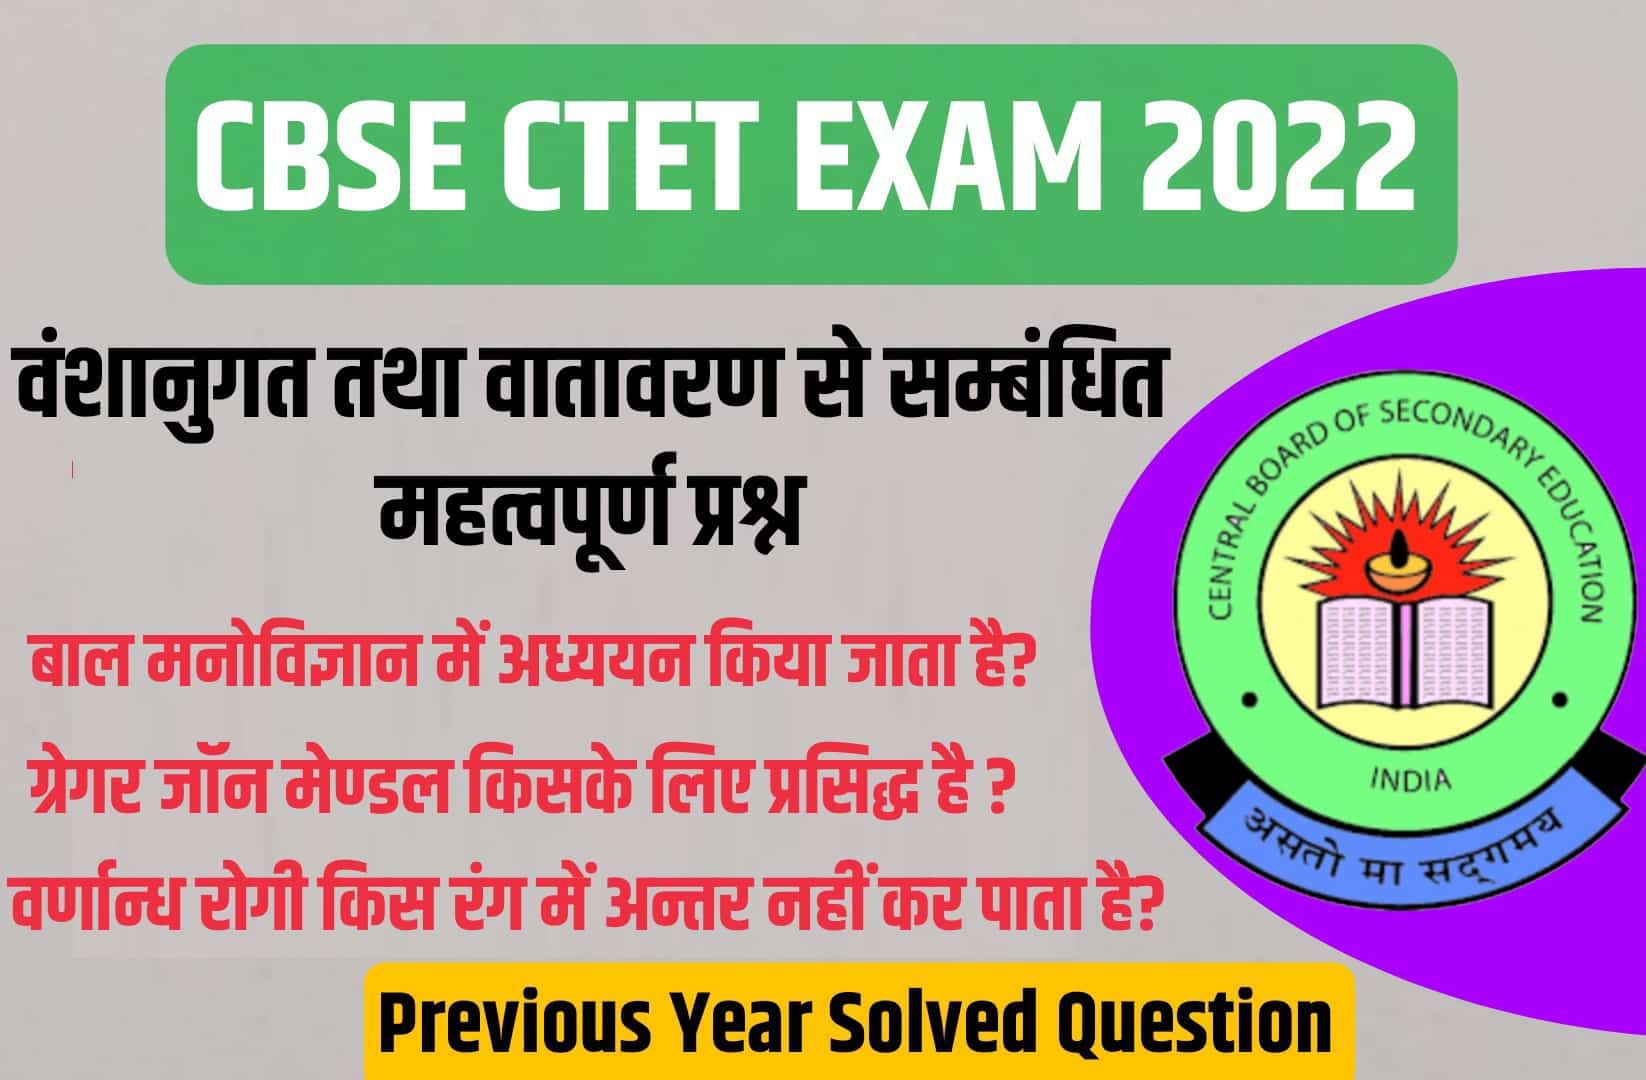 CBSE CTET Exam 2022 | वंशानुगत तथा वातावरण से सम्बंधित CTET परीक्षा में पूछें गये महत्वपूर्ण प्रश्न, अवश्य पढ़ें